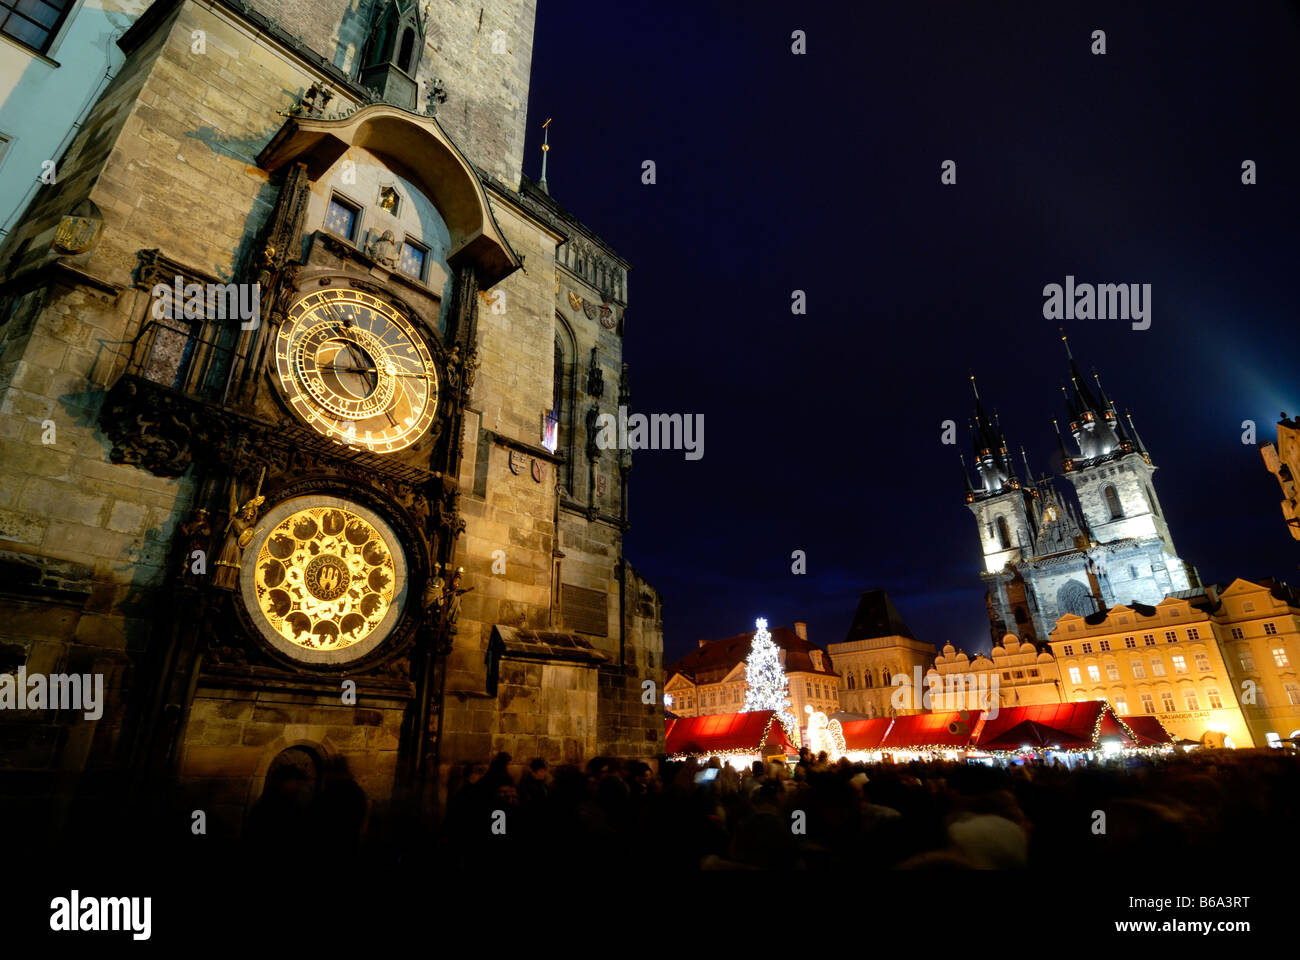 Horloge astronomique Orloj Old Town Hall de nuit la place de la vieille ville de Prague République tchèque de l'UNESCO Marché de Noël Banque D'Images